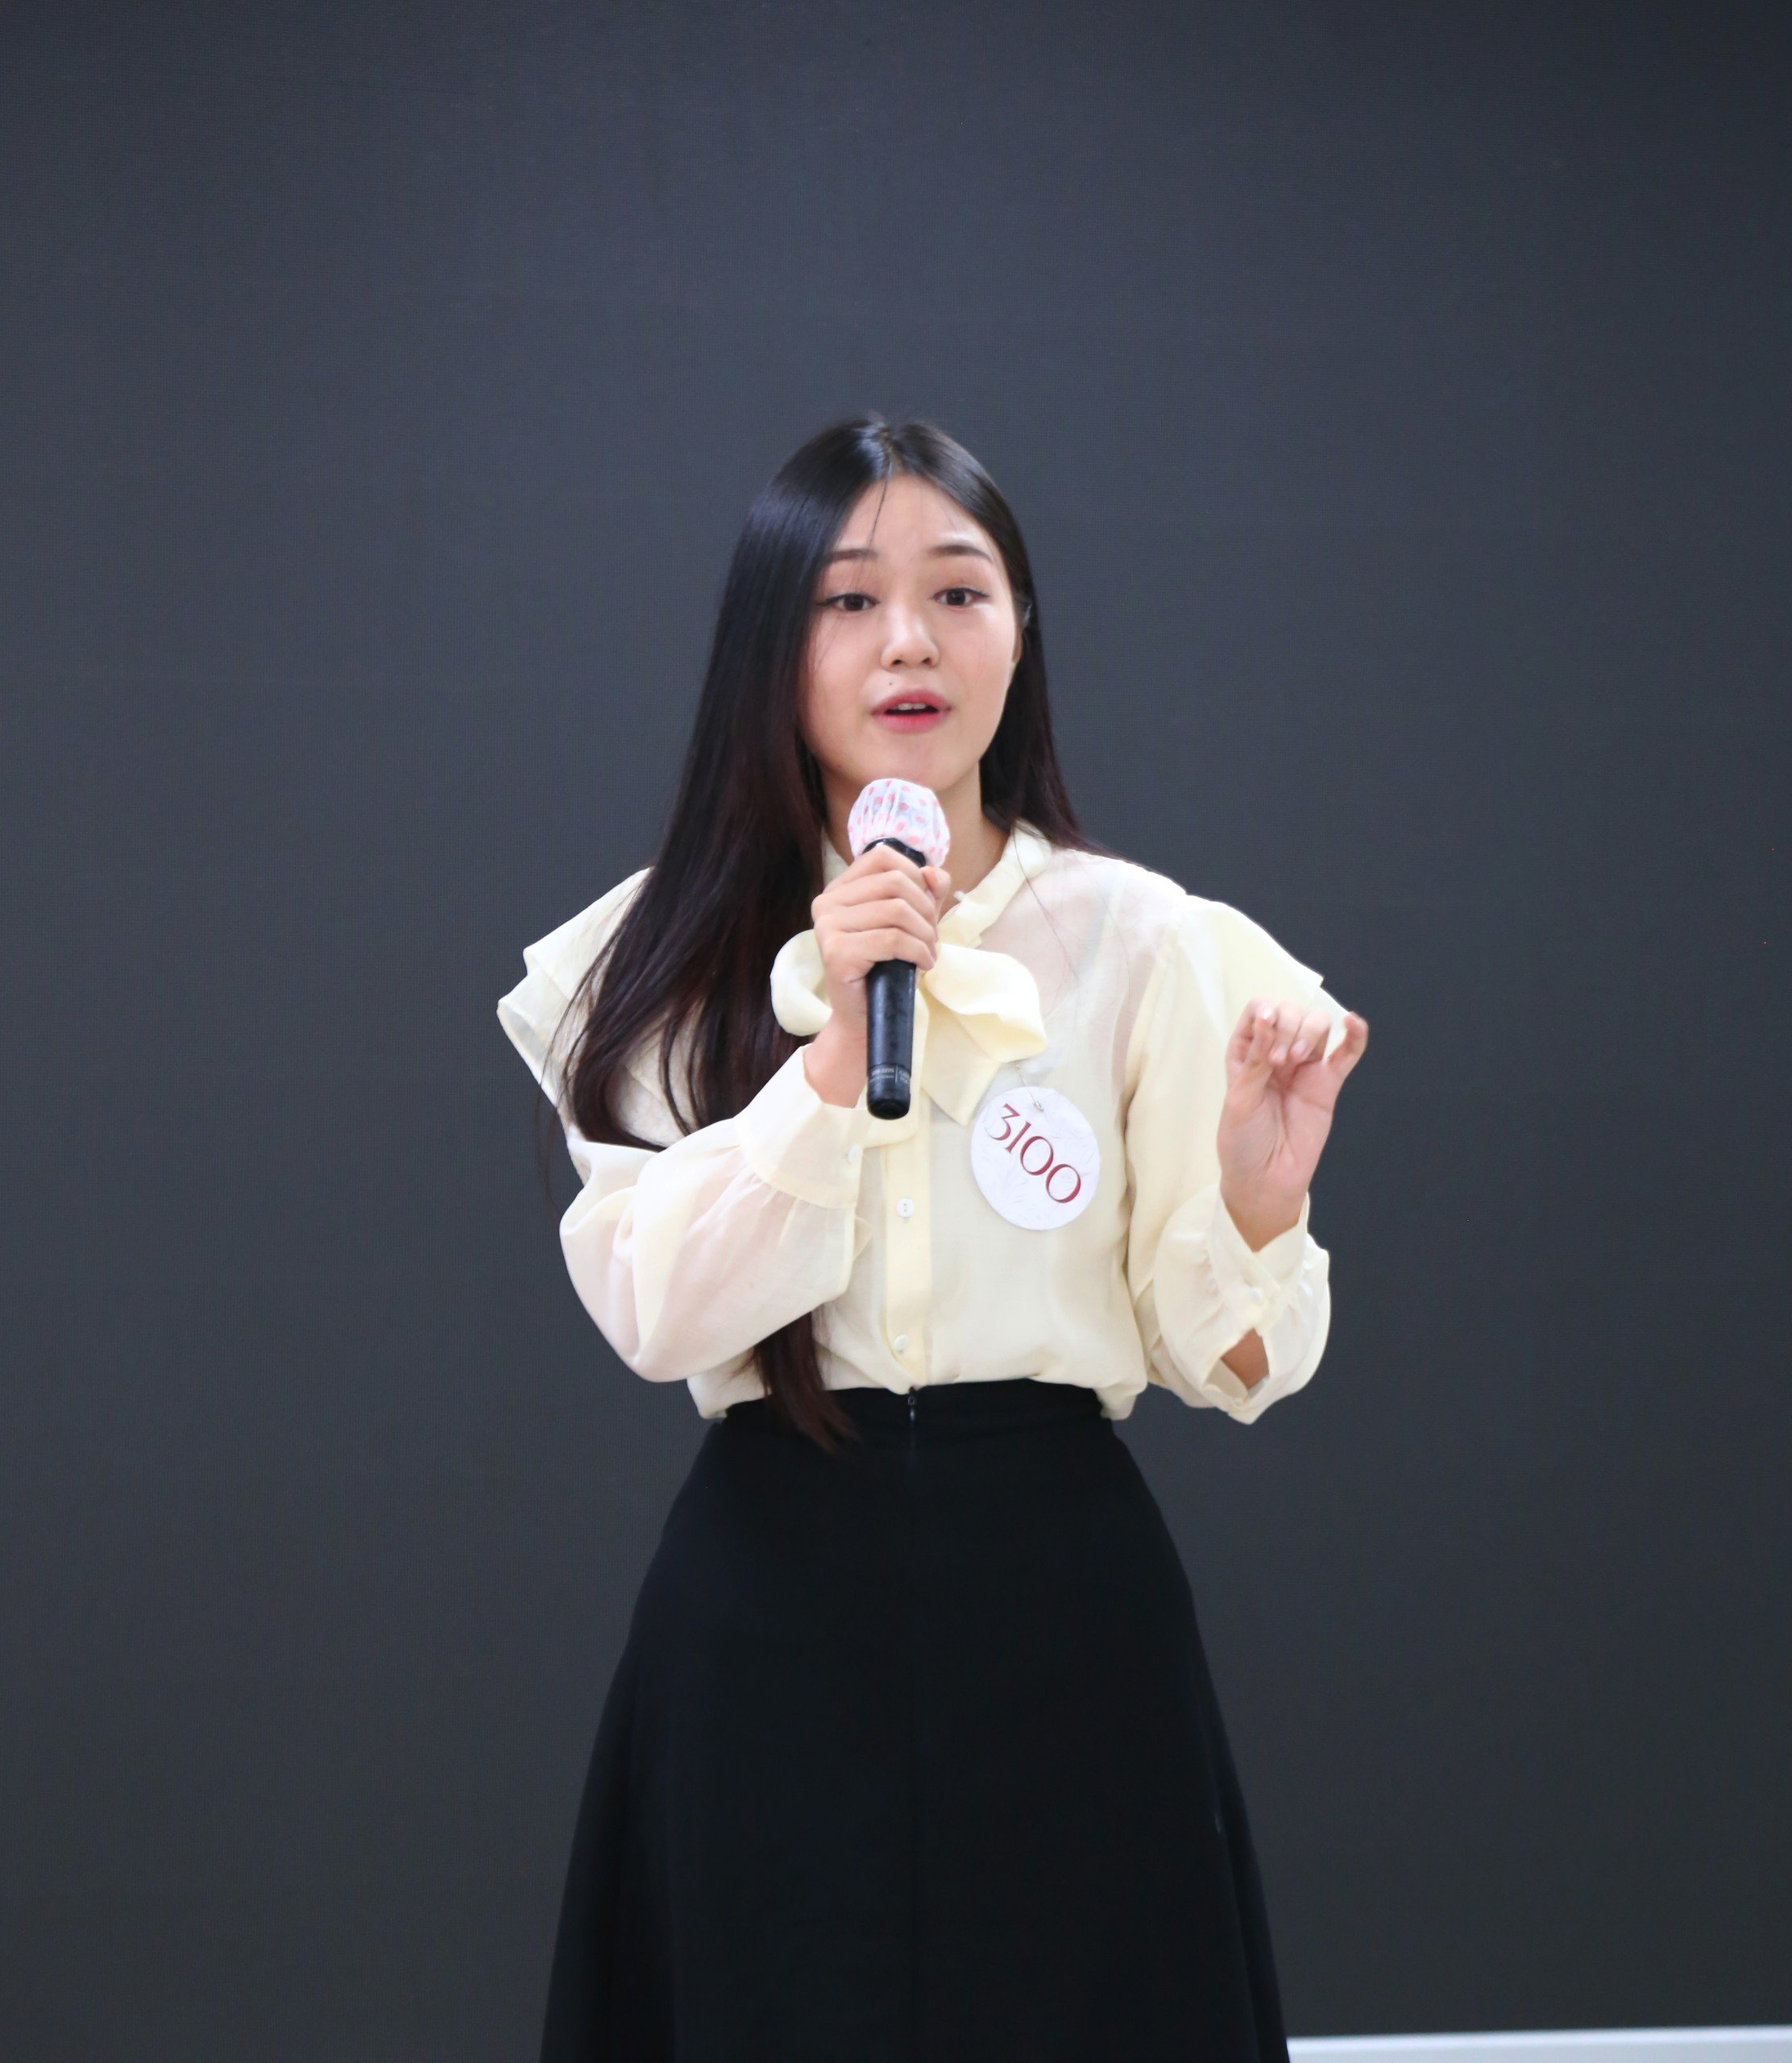 Thí sinh Hoa khôi sinh viên tự tin hùng biện tiếng Anh và dự án thiện nguyện